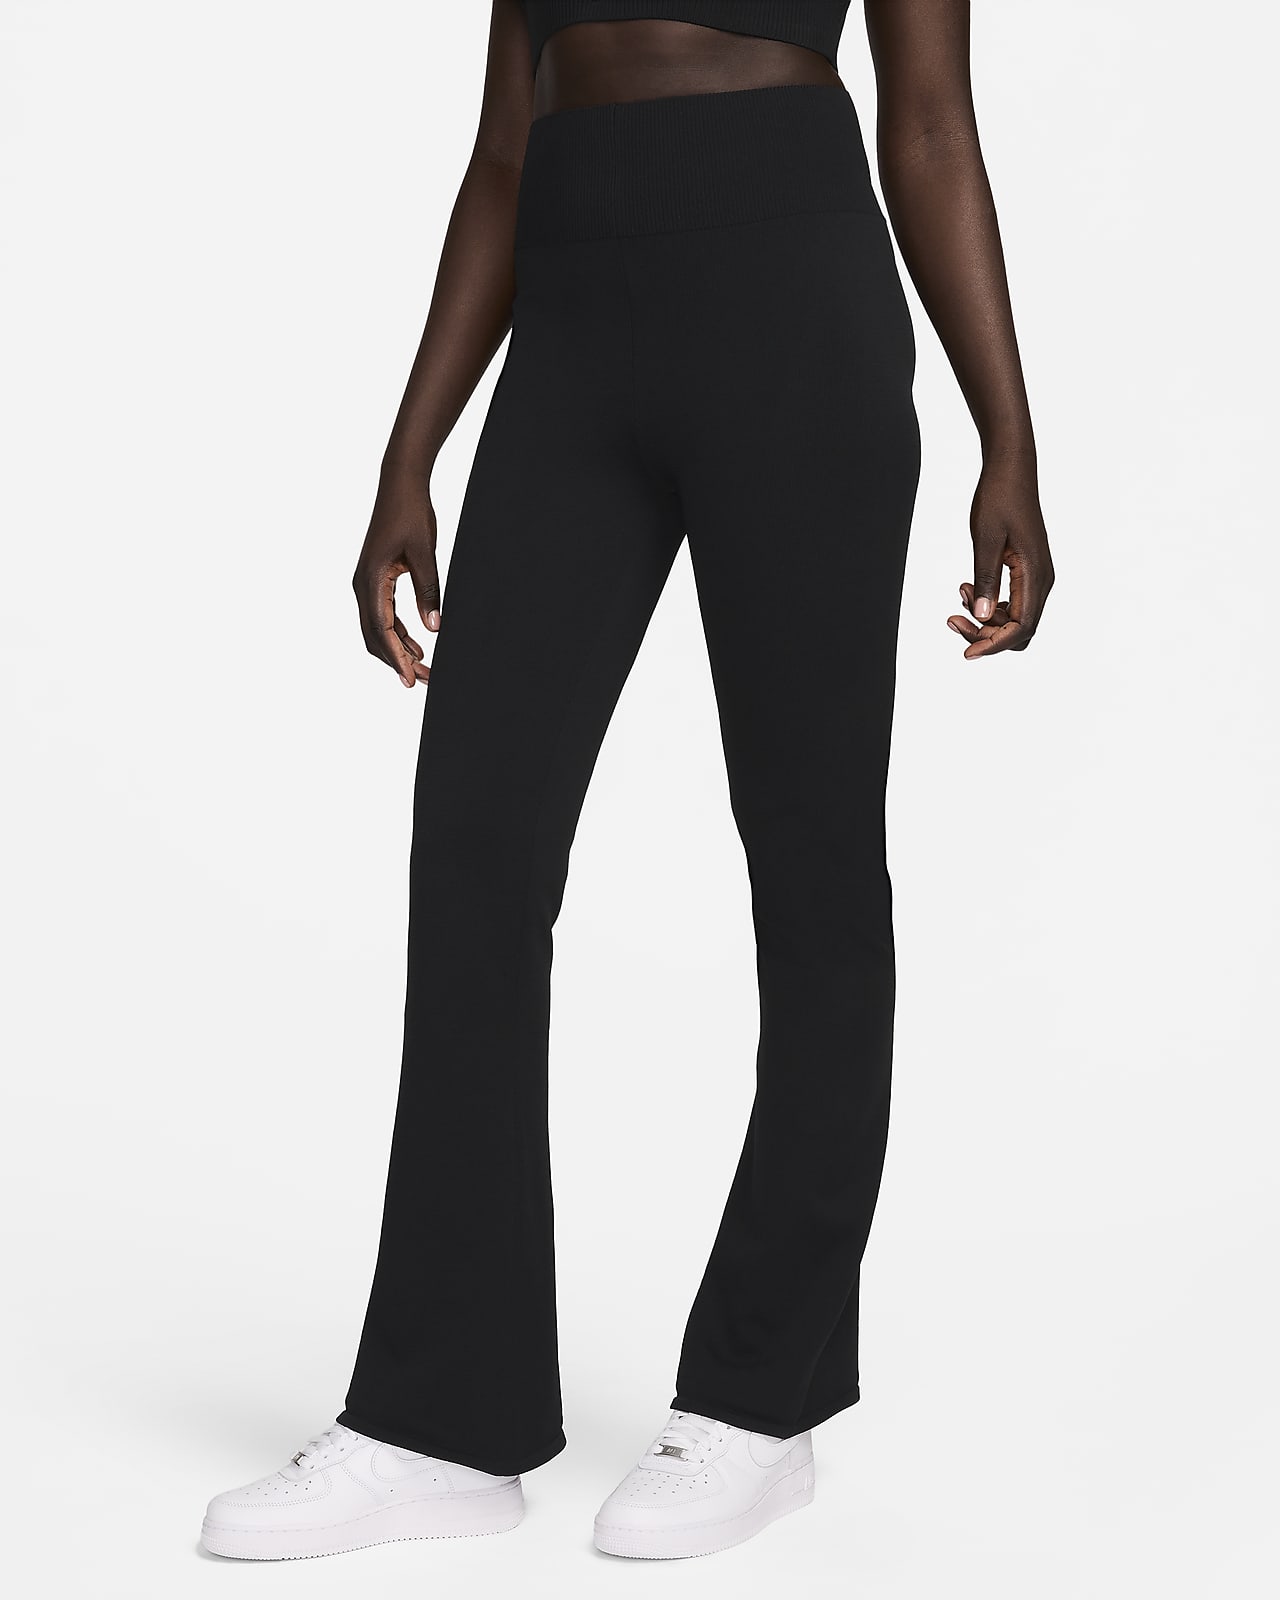 Γυναικείο ψηλόμεσο εφαρμοστό παντελόνι φόρμας με μπατζάκια που φαρδαίνουν προς τα κάτω Nike Sportswear Chill Knit